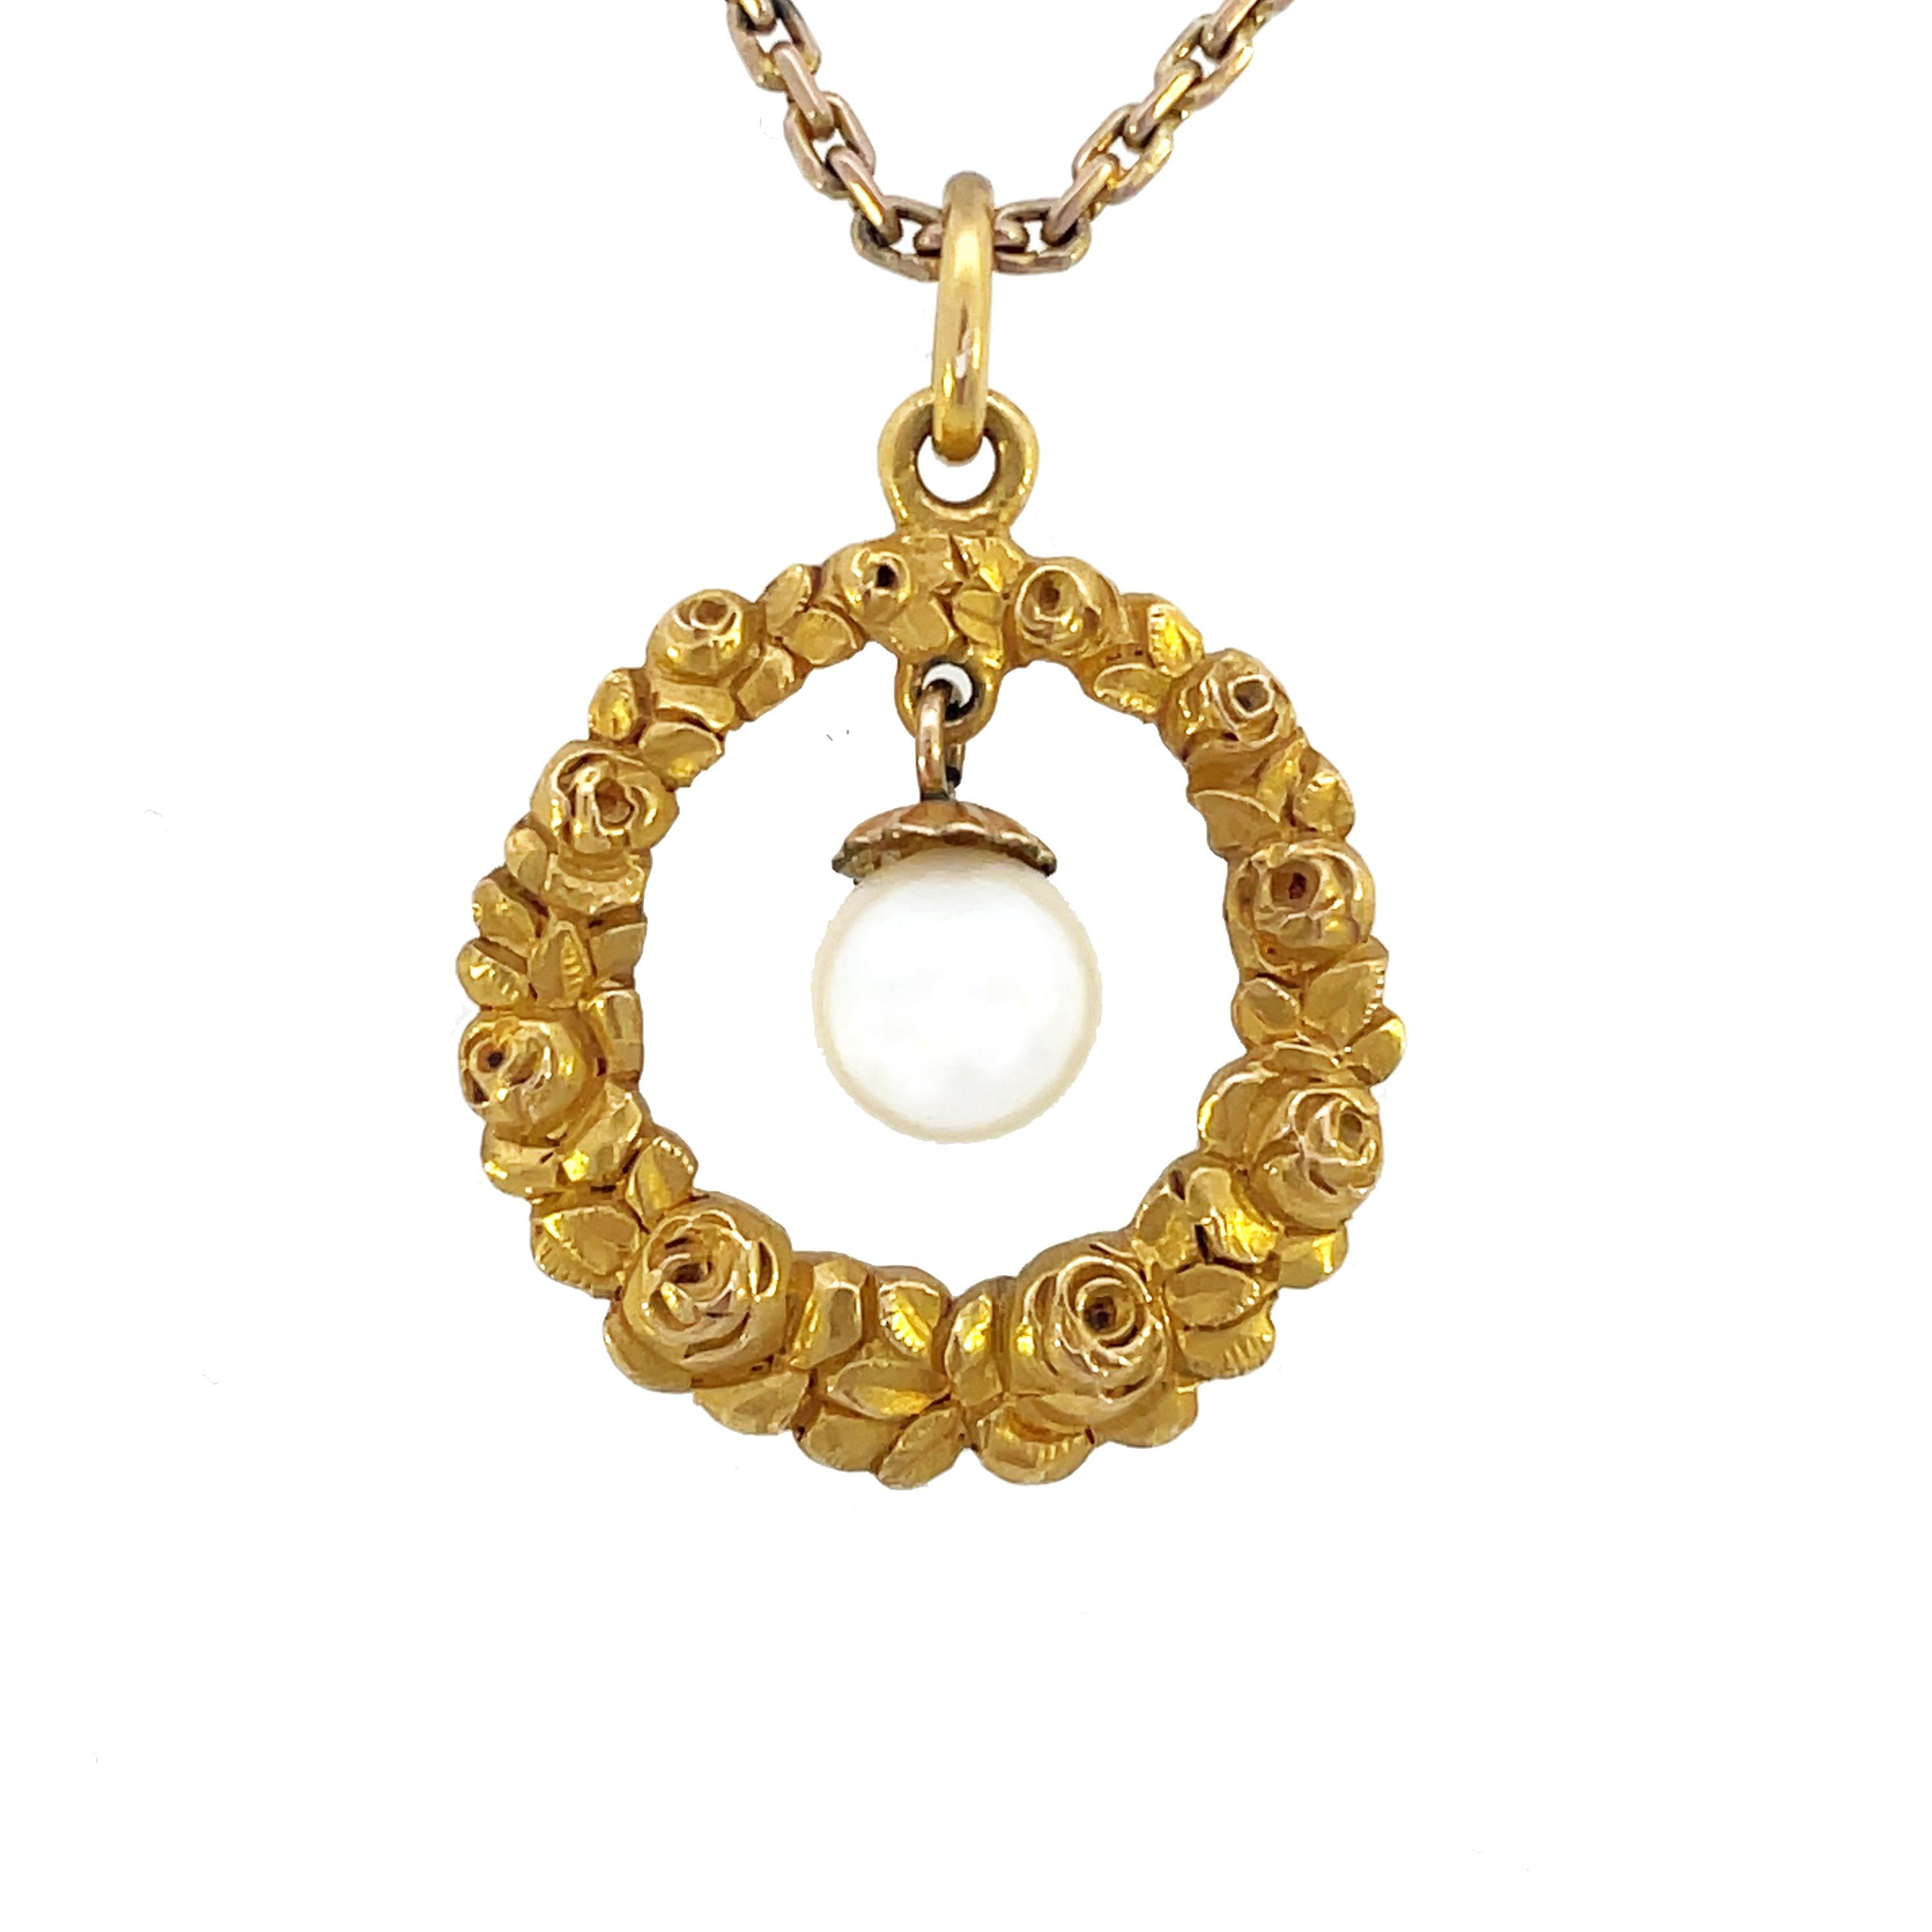 Cet exquis pendentif édouardien en or jaune 14 carats est orné d'un ravissant motif de rose encadrant une perle articulée au centre. Ce pendentif est élégant et classe et serait un excellent ajout à votre garde-robe de bijoux. La gravure est